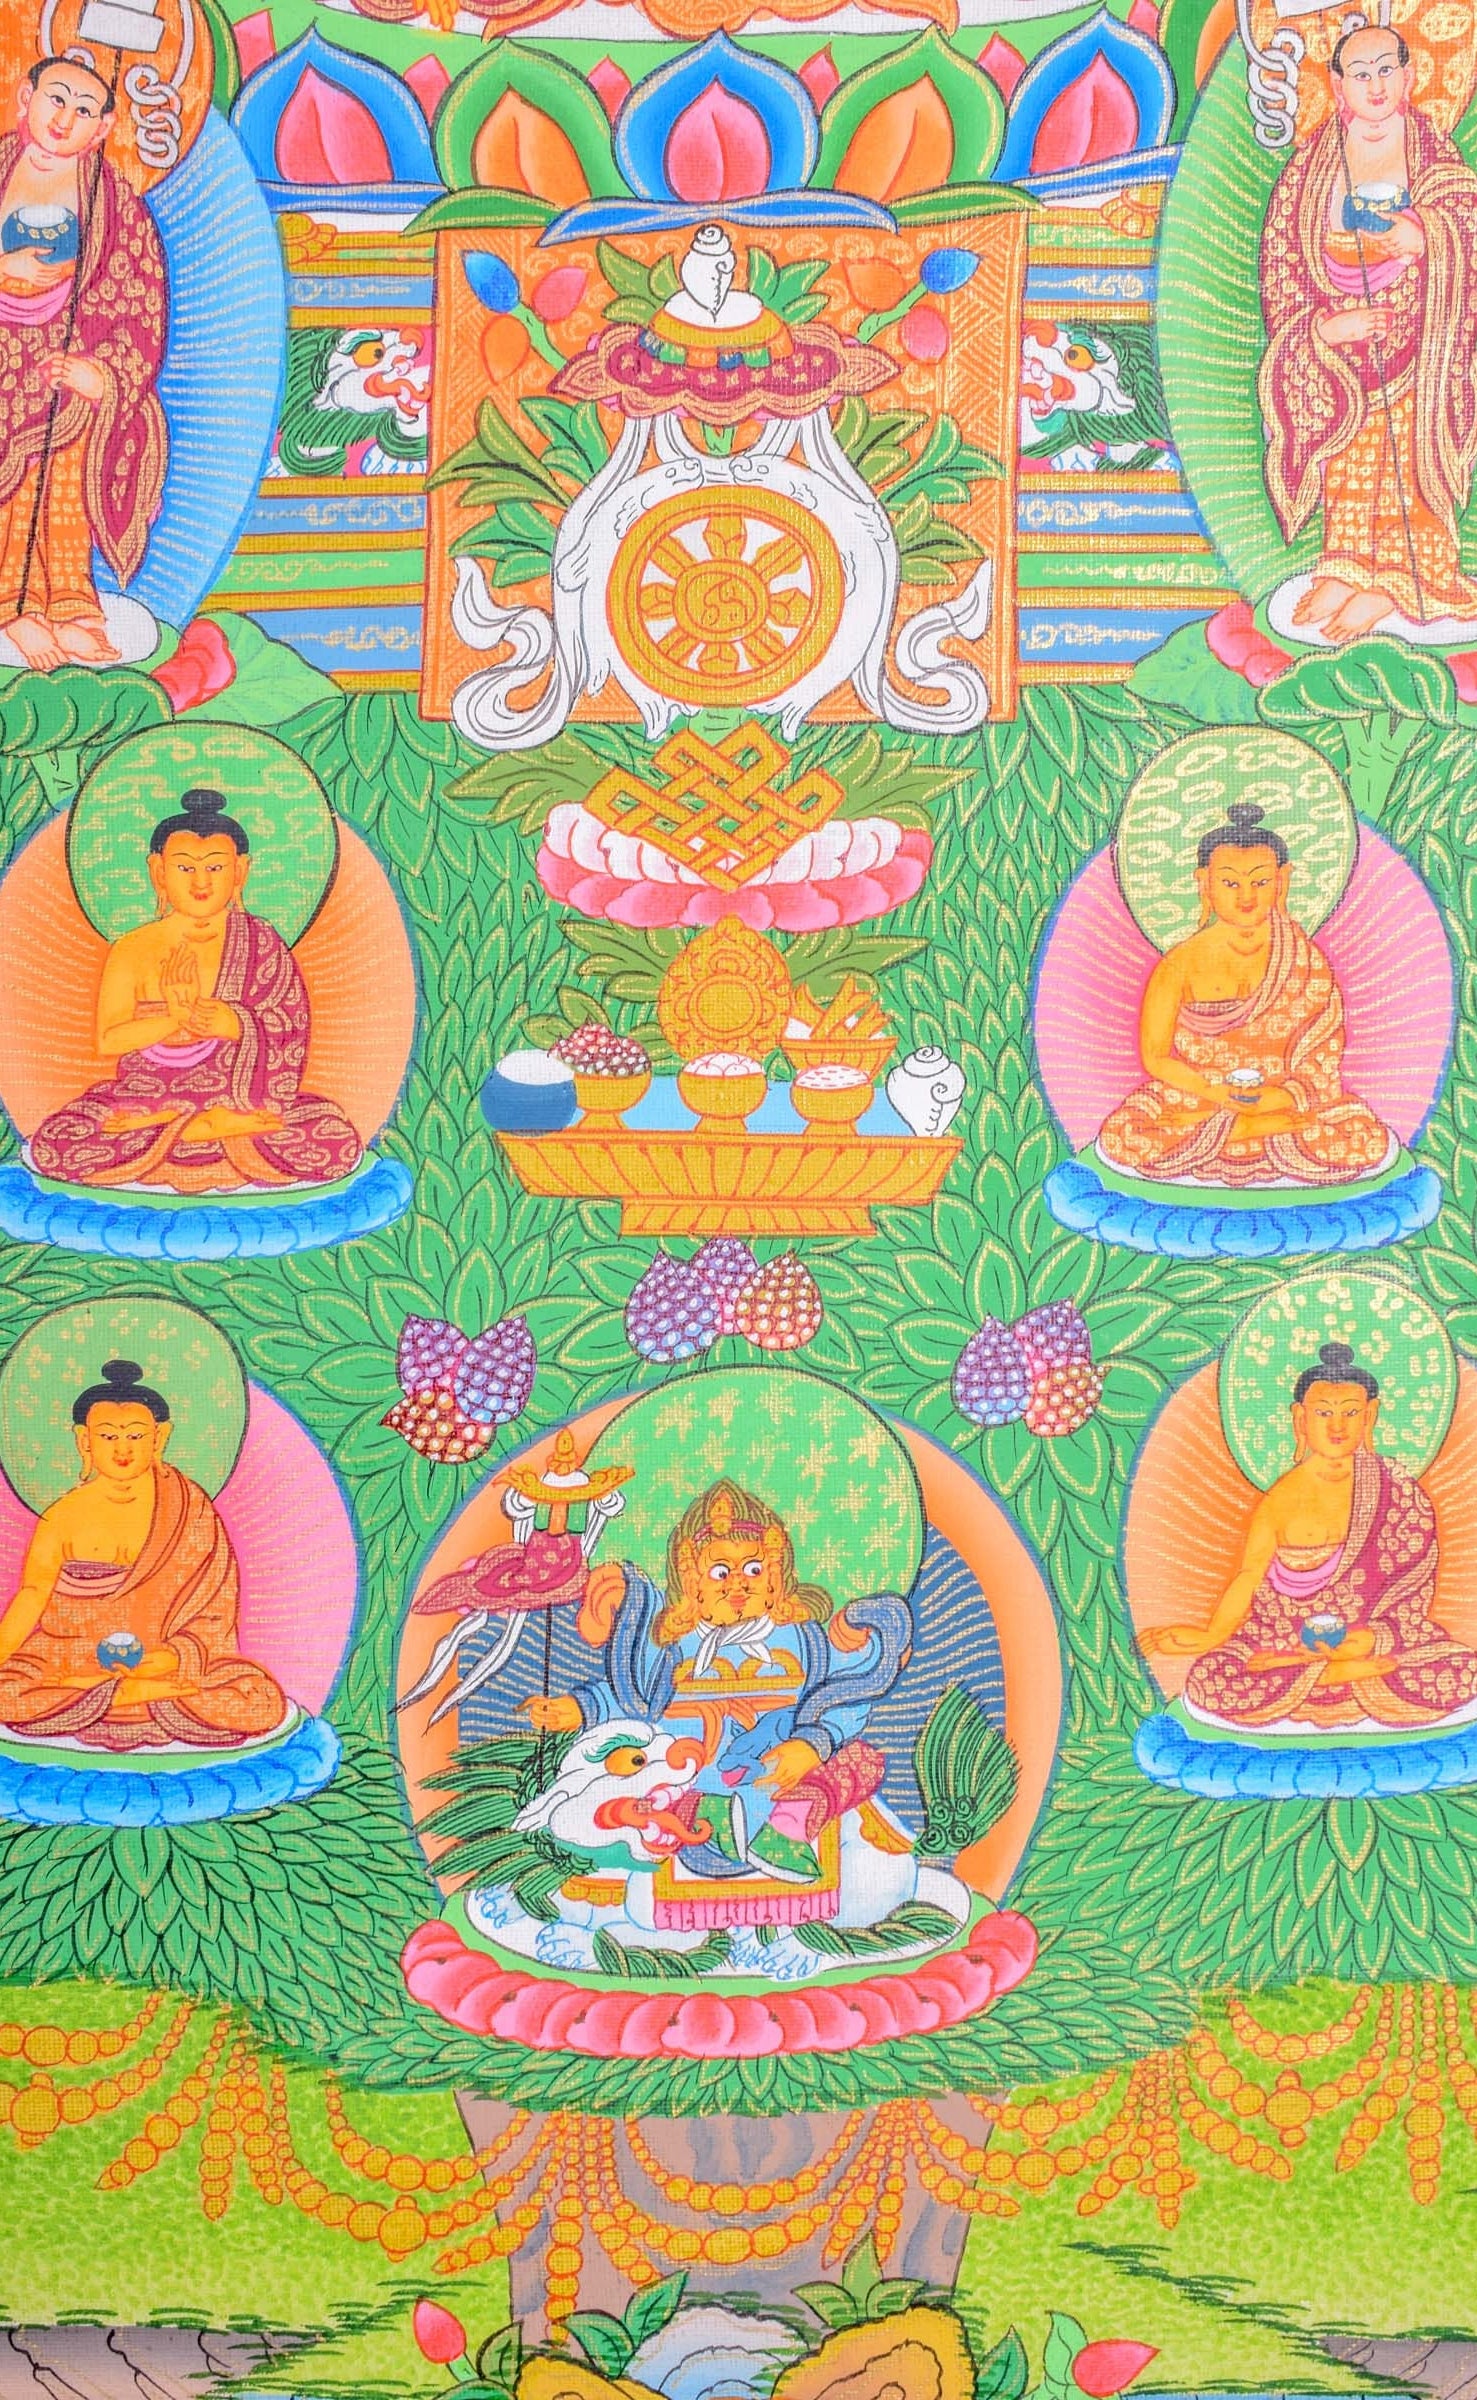 35 Buddha Thanka Art with Shakyamuni - Lucky Thanka